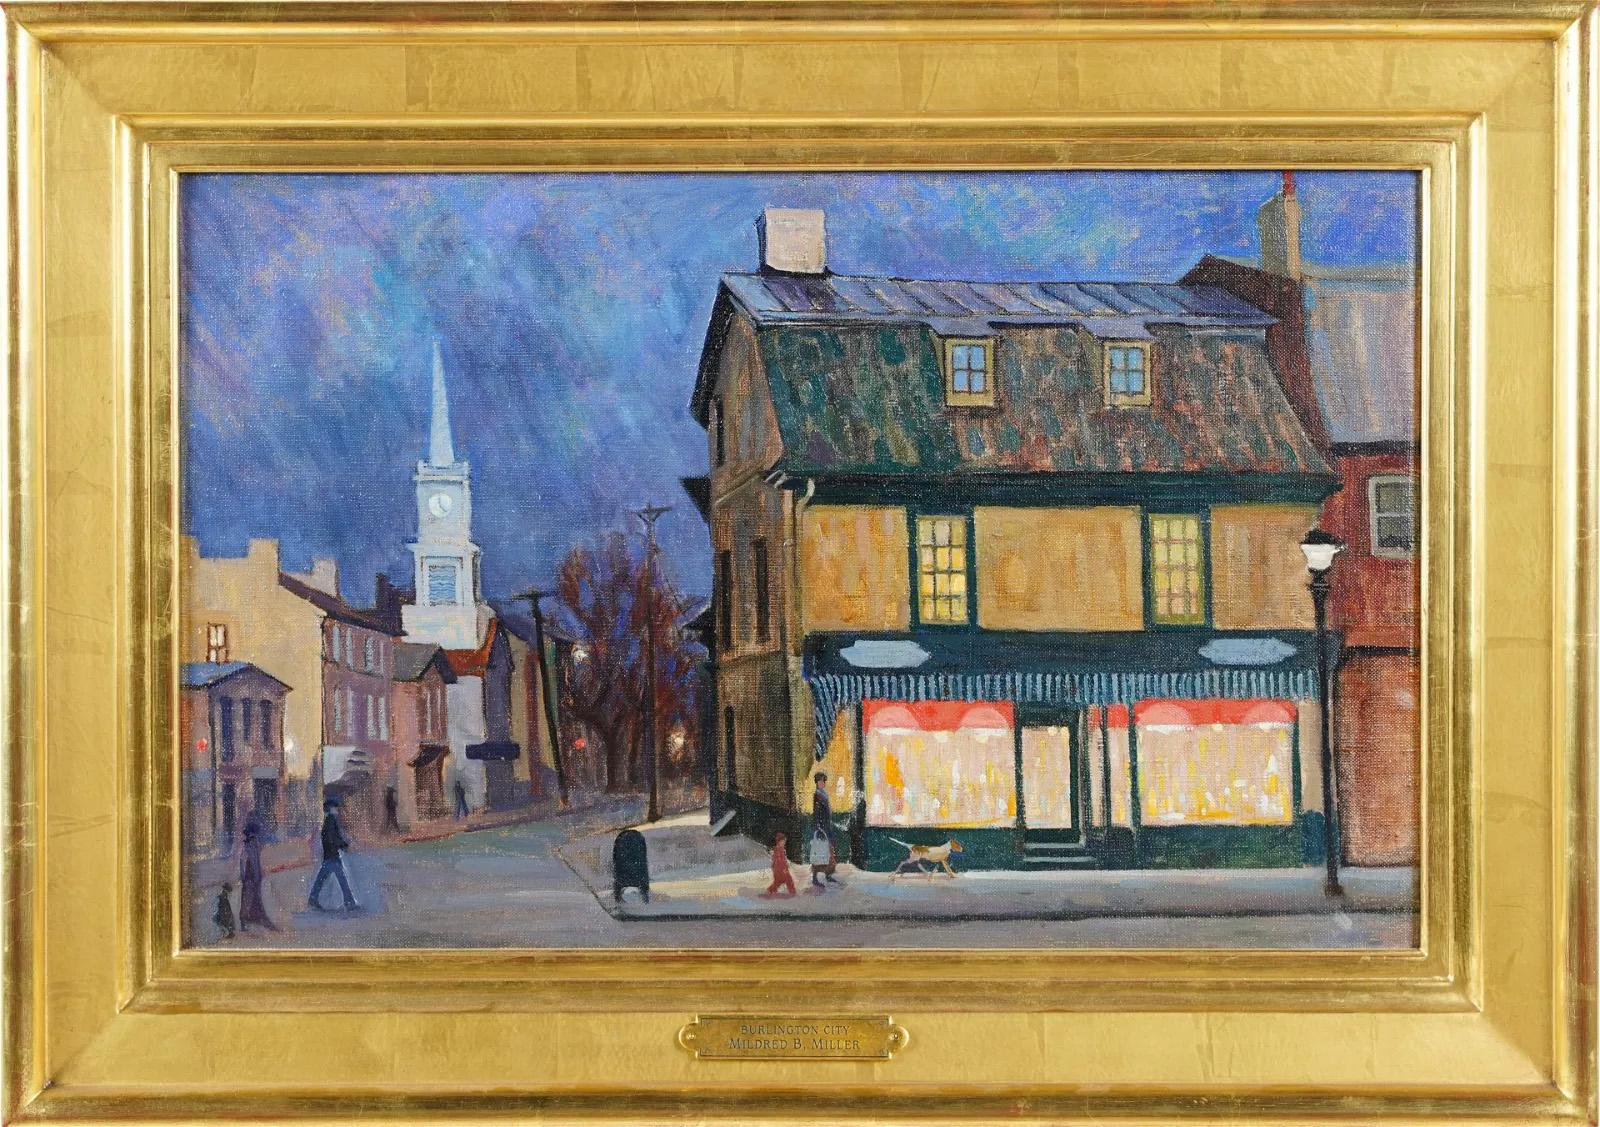 Ancienne peinture à l'huile impressionniste d'Ashcan Street, paysage urbain nouveau et impressionniste de Burlington